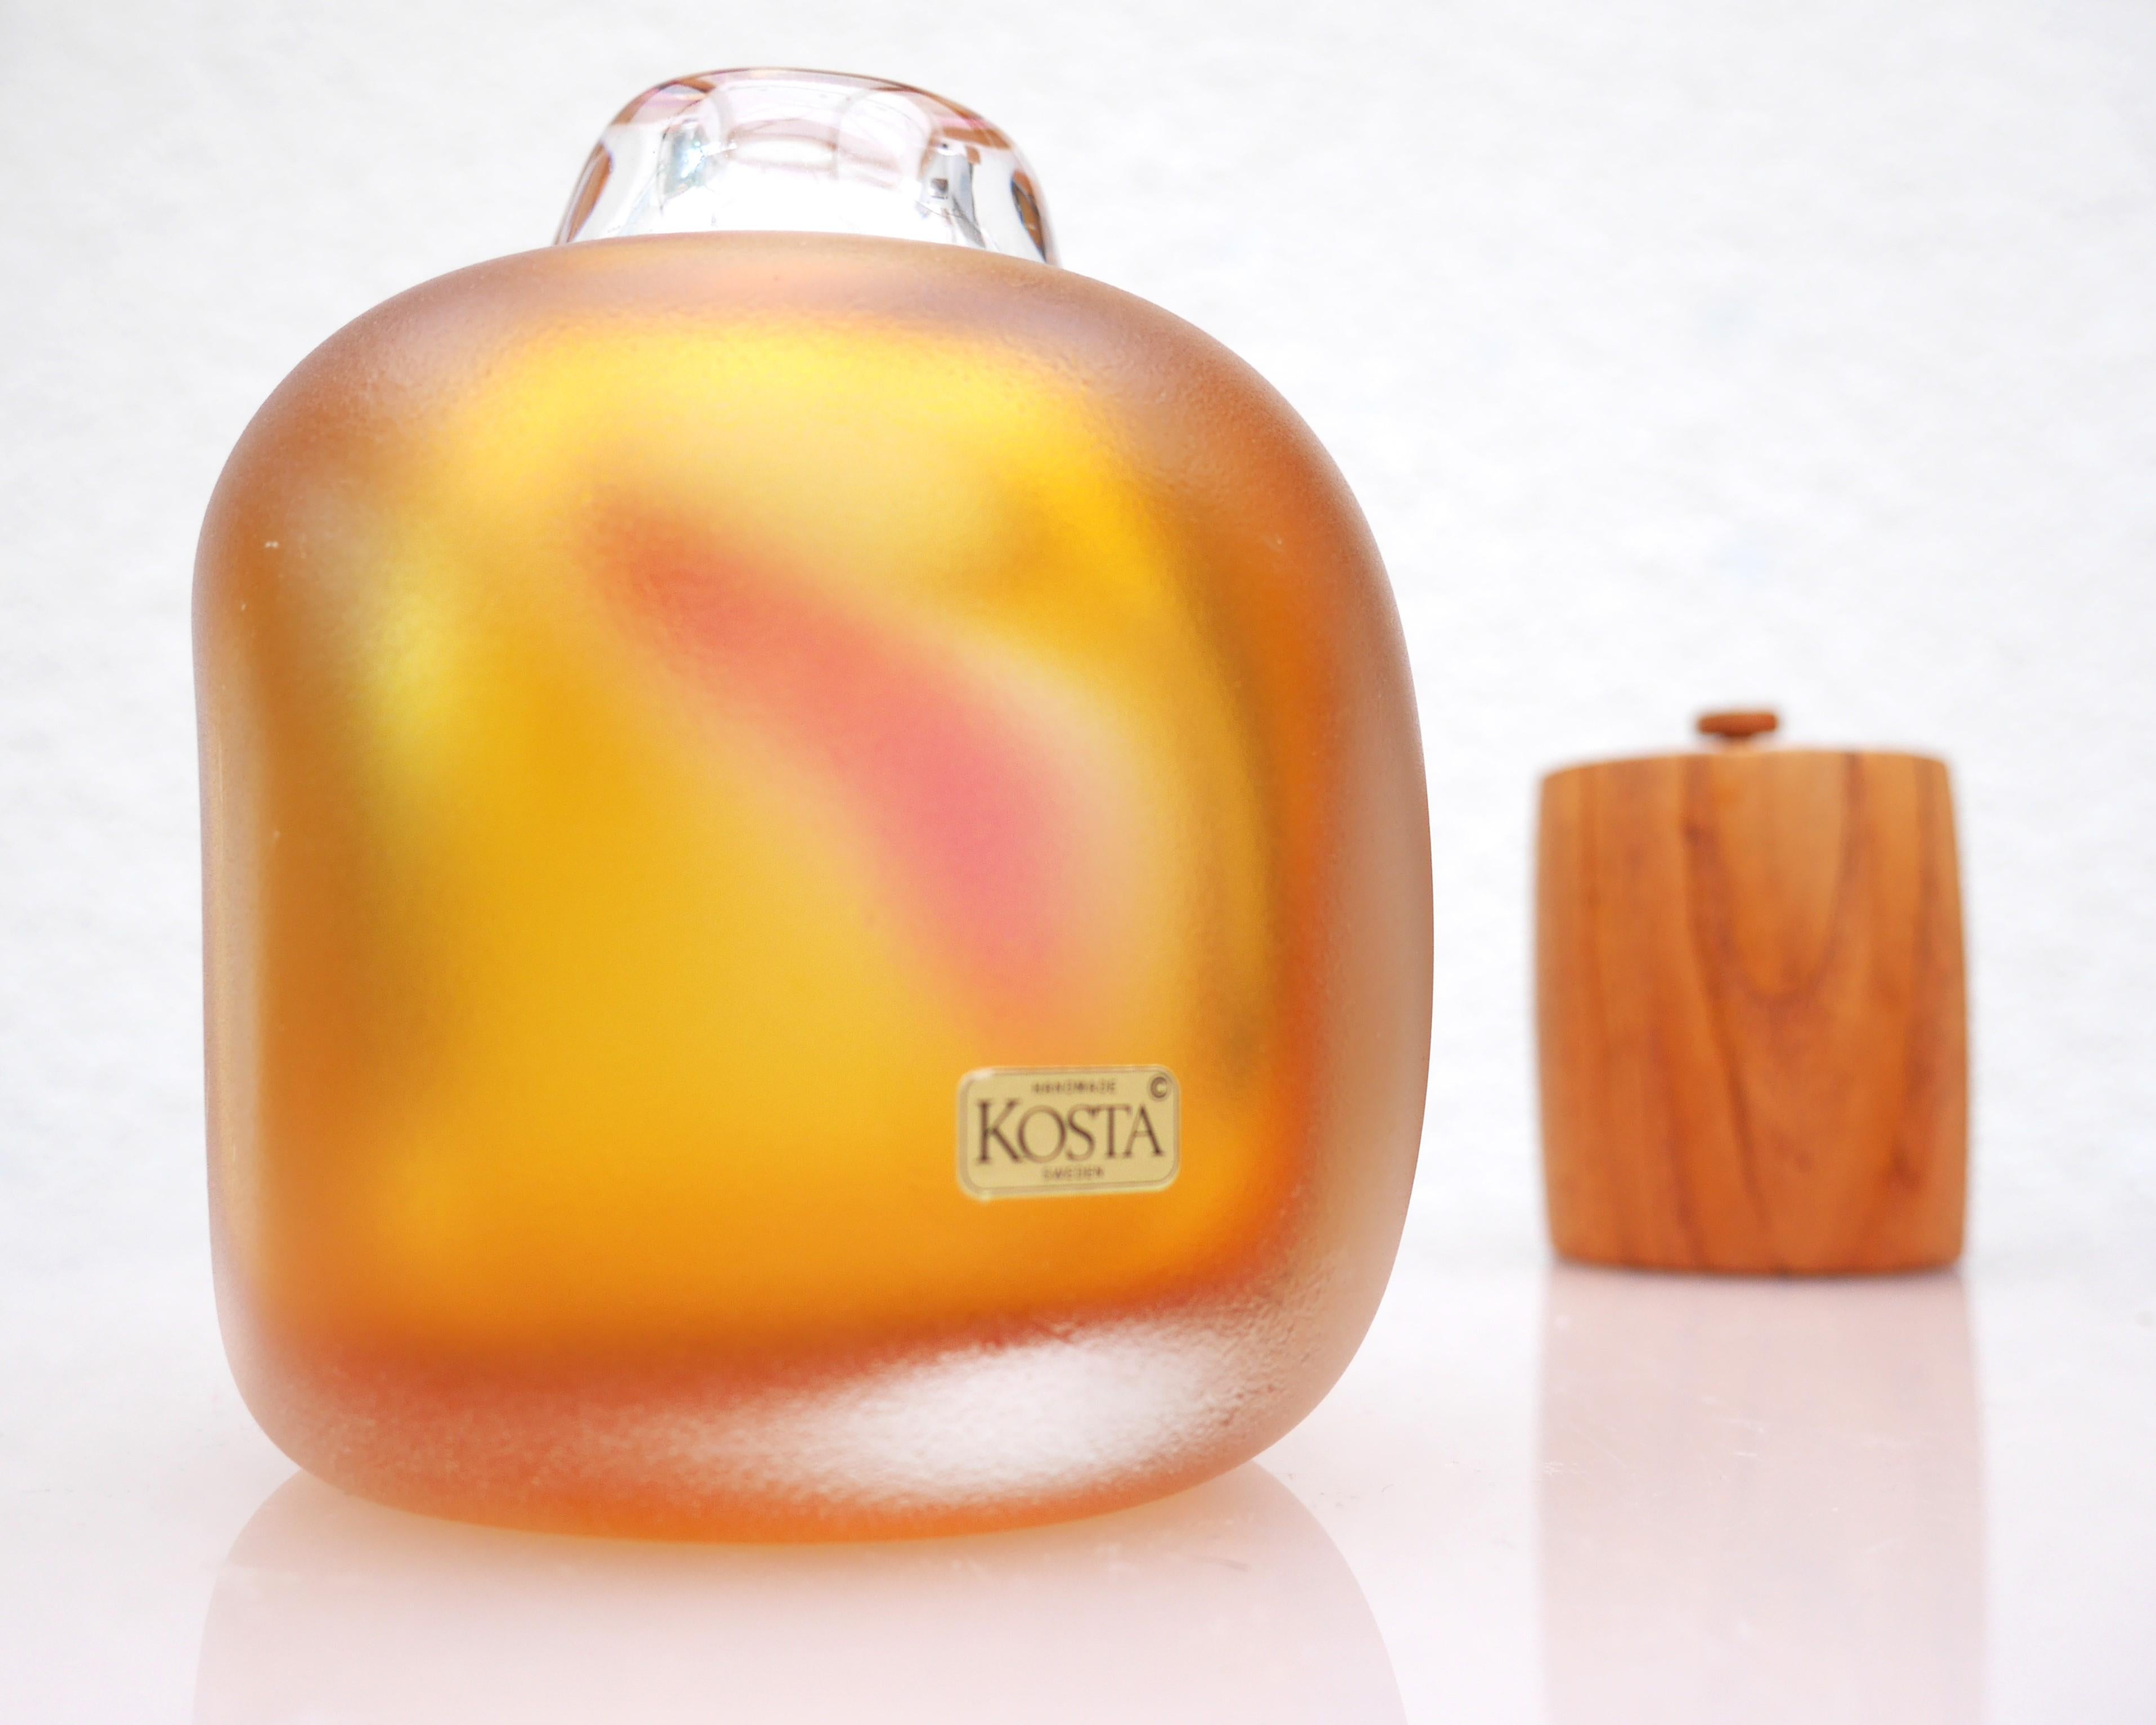 Un vase en verre rare, de collection et signé.  Design Modern suédois, fabriqué par Wärff pour Boda, Suède. Cette œuvre a été réalisée à la main par l'artiste, et il s'agit d'une édition limitée, donc numérotée et signée, ce qui la rend très